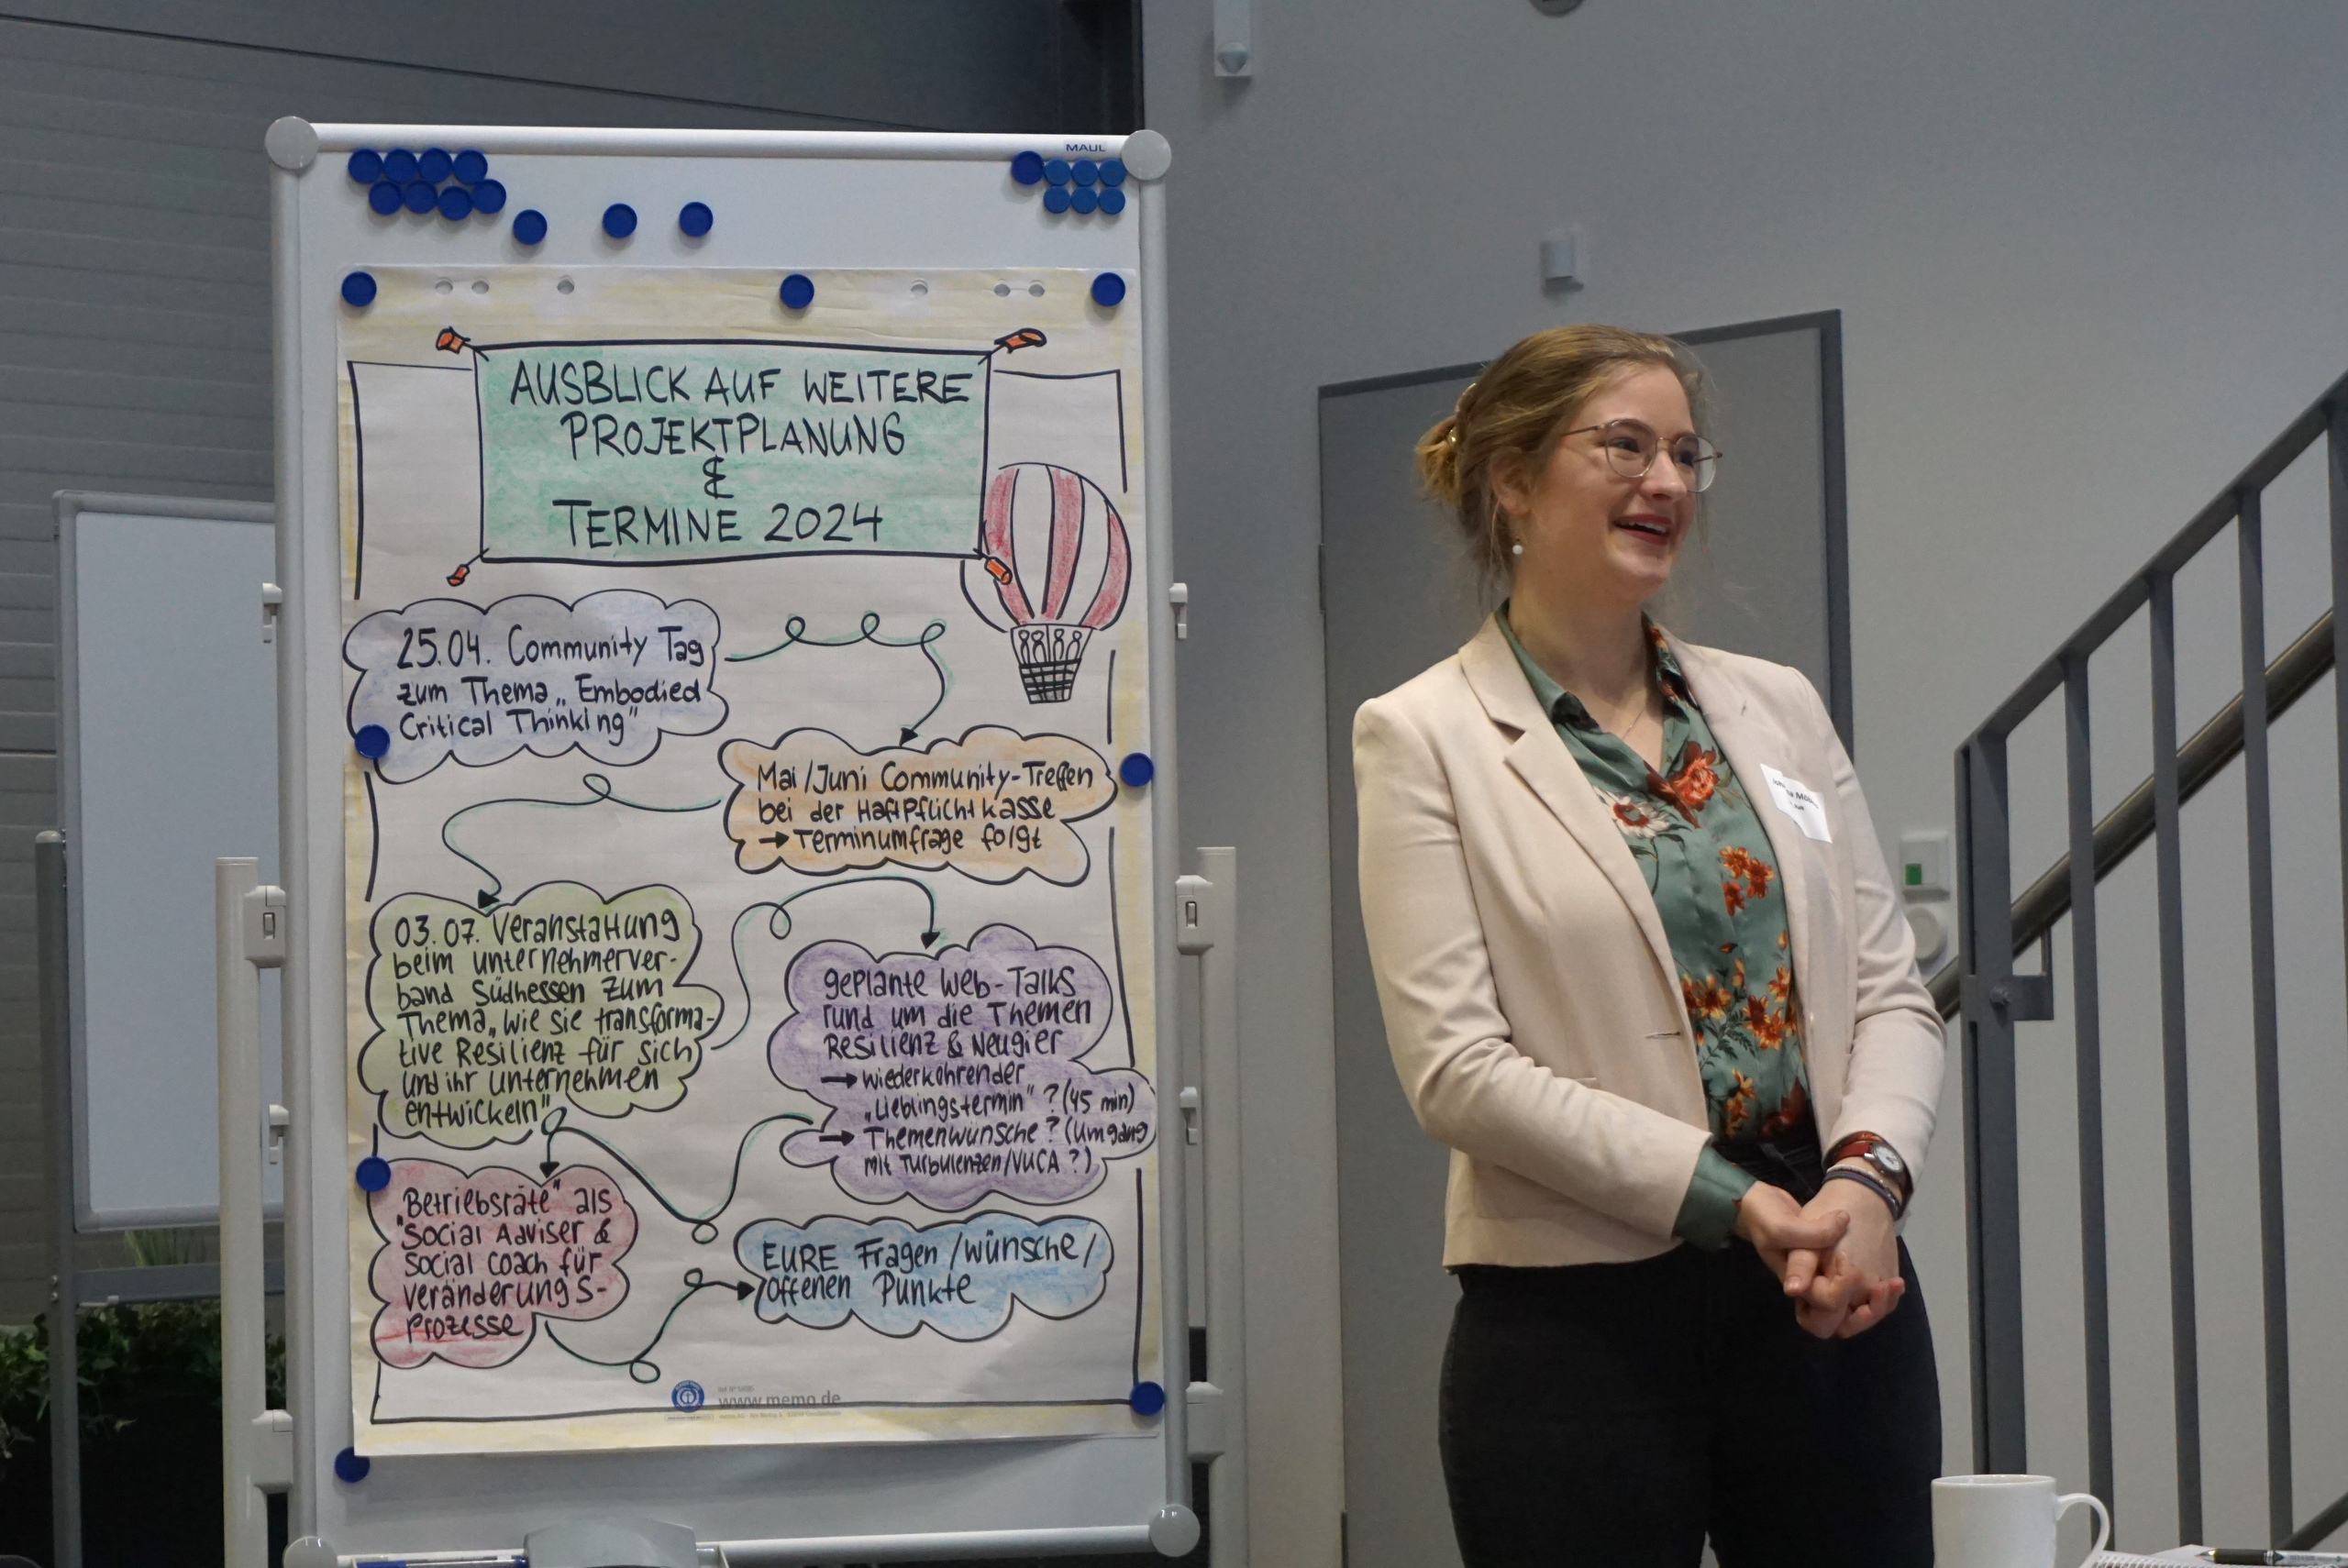 Unsere Projektkoordinatorin Johanna Möbius erläutert die Agenda für das Community-Treffen.